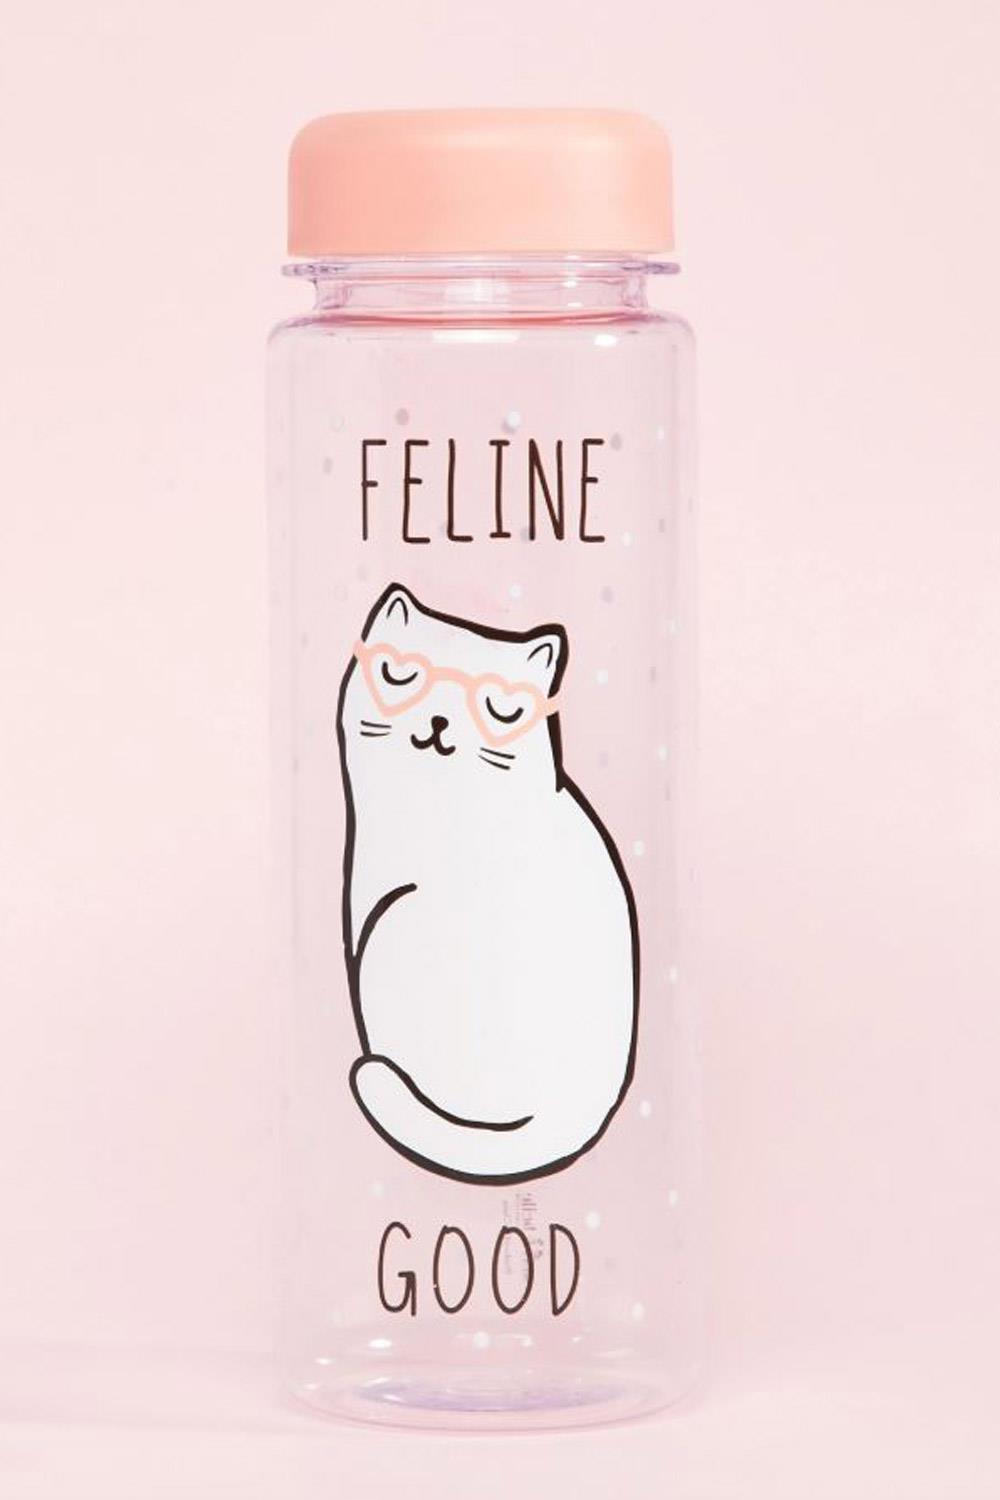 gatos asos Botella de agua feline good cat de Sass & Belle, 8,49€